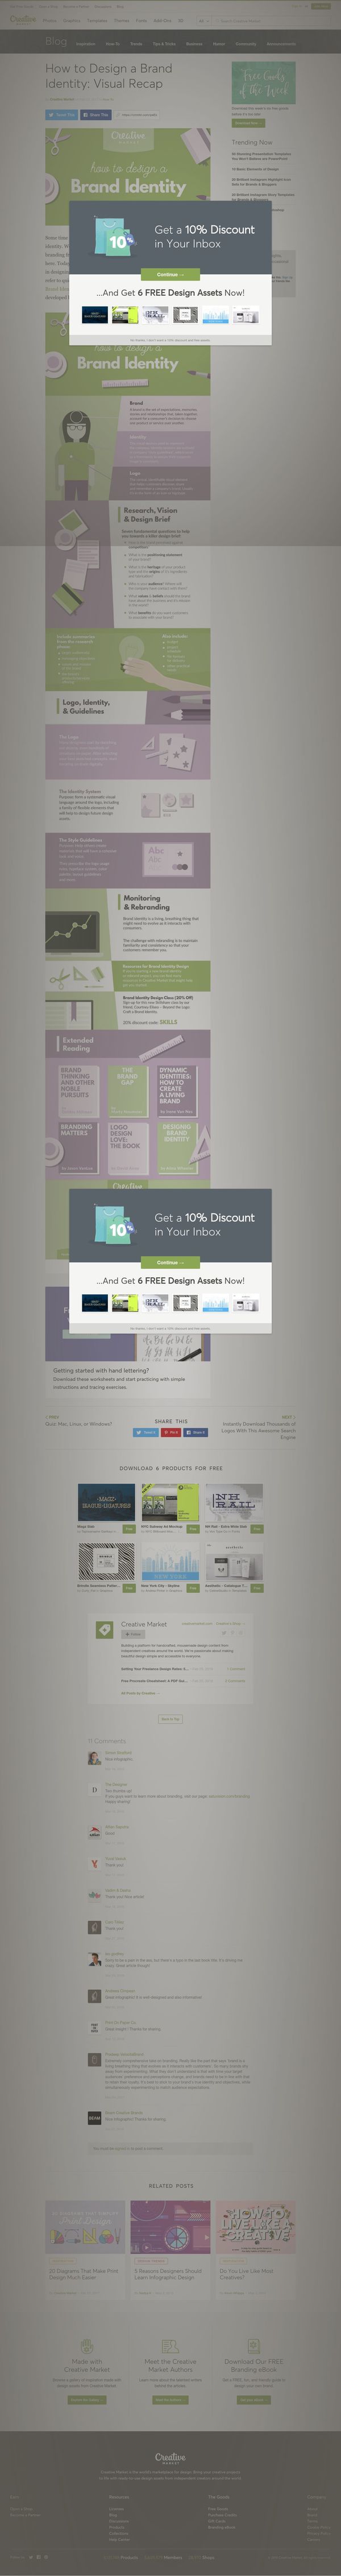 creativemarket.com/blog/how-to-design-a-brand-identity-visual-recap